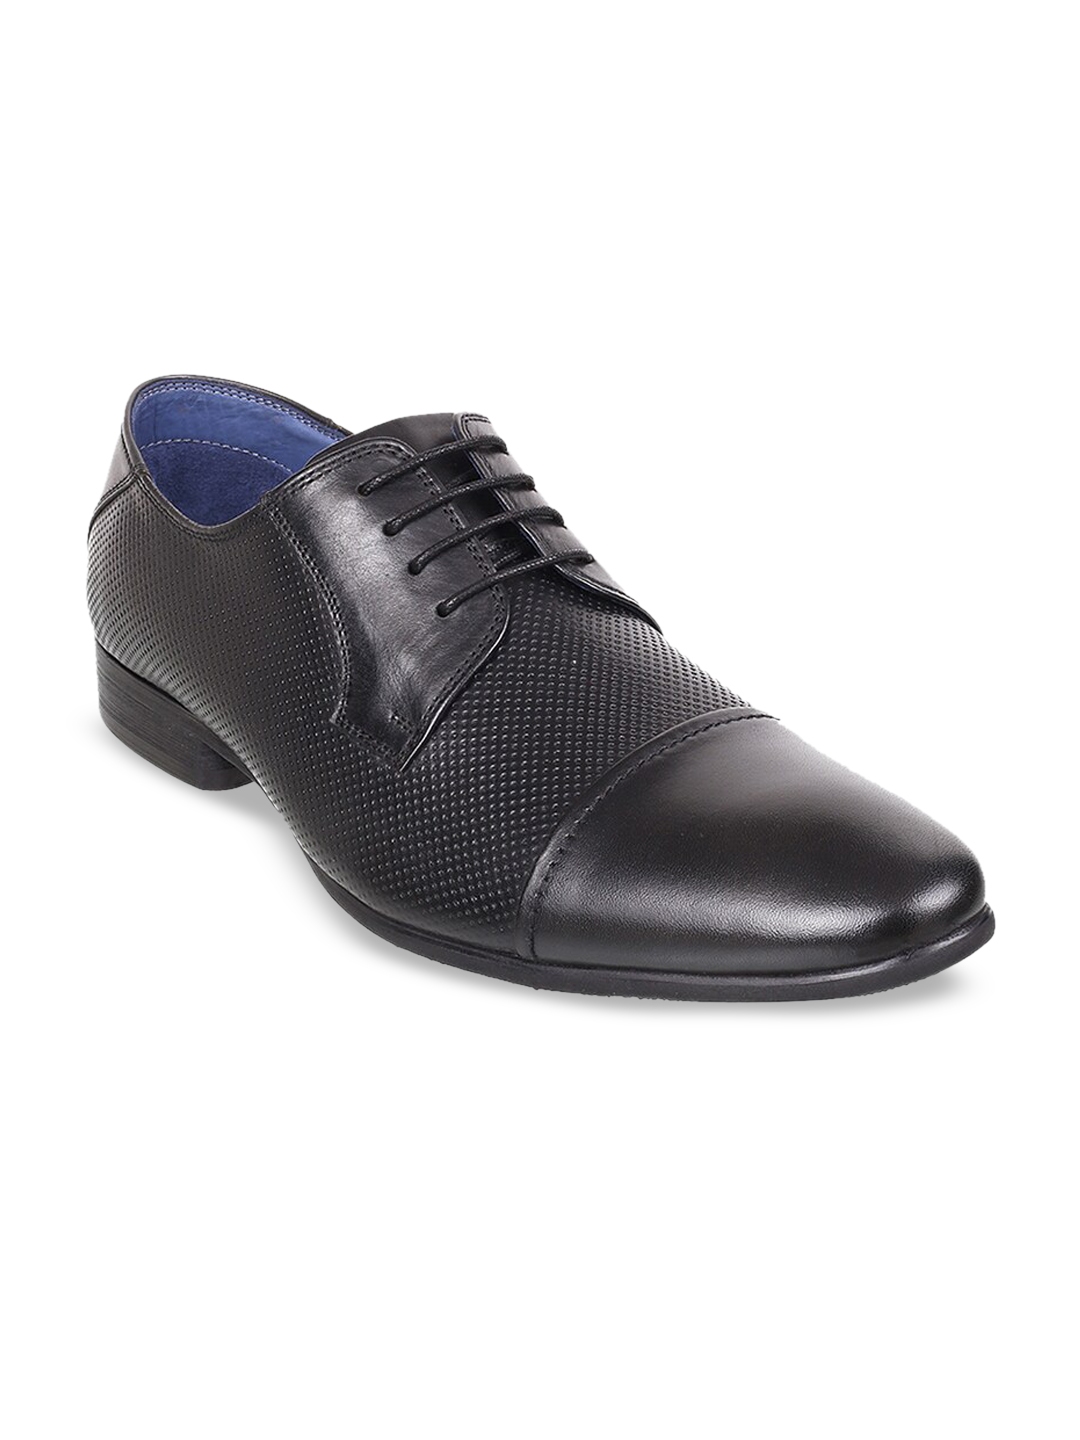 Buy DAVINCHI Men Black Solid Leather Formal Derbys - Formal Shoes for ...